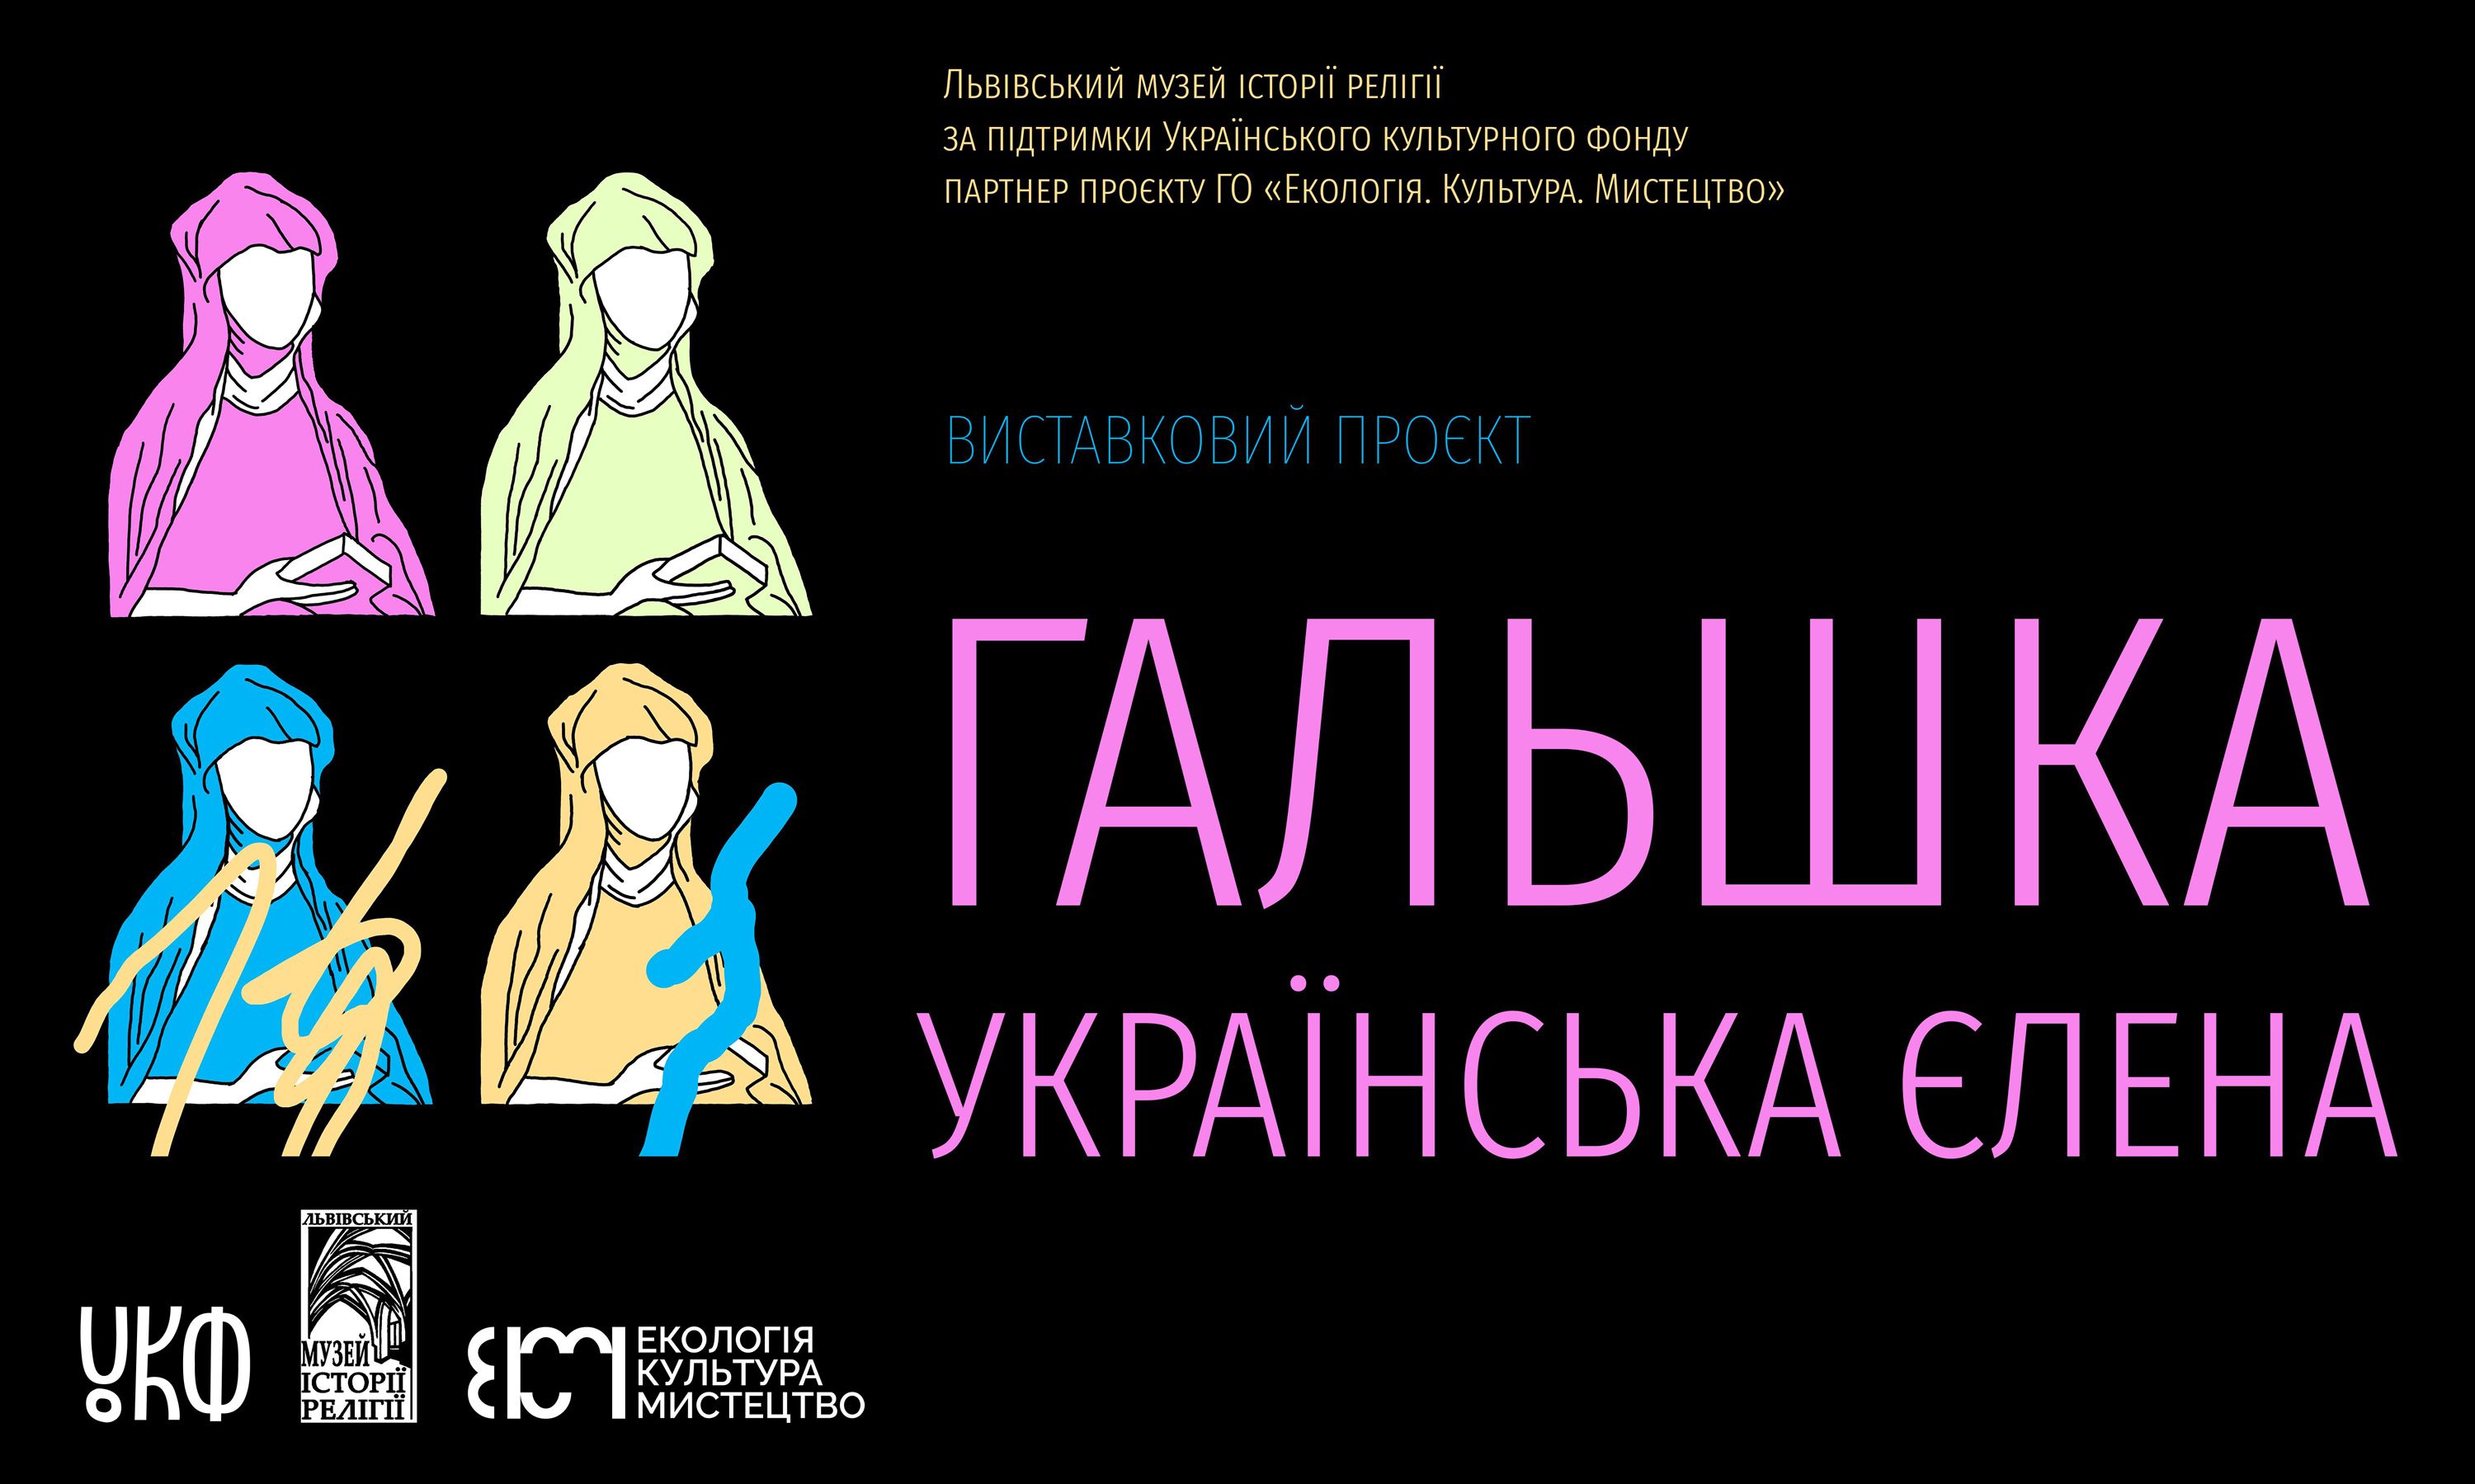 Виставку «Гальшка. Українська Єлена» можна оглянути у музеї до кінця року  - фото 122610